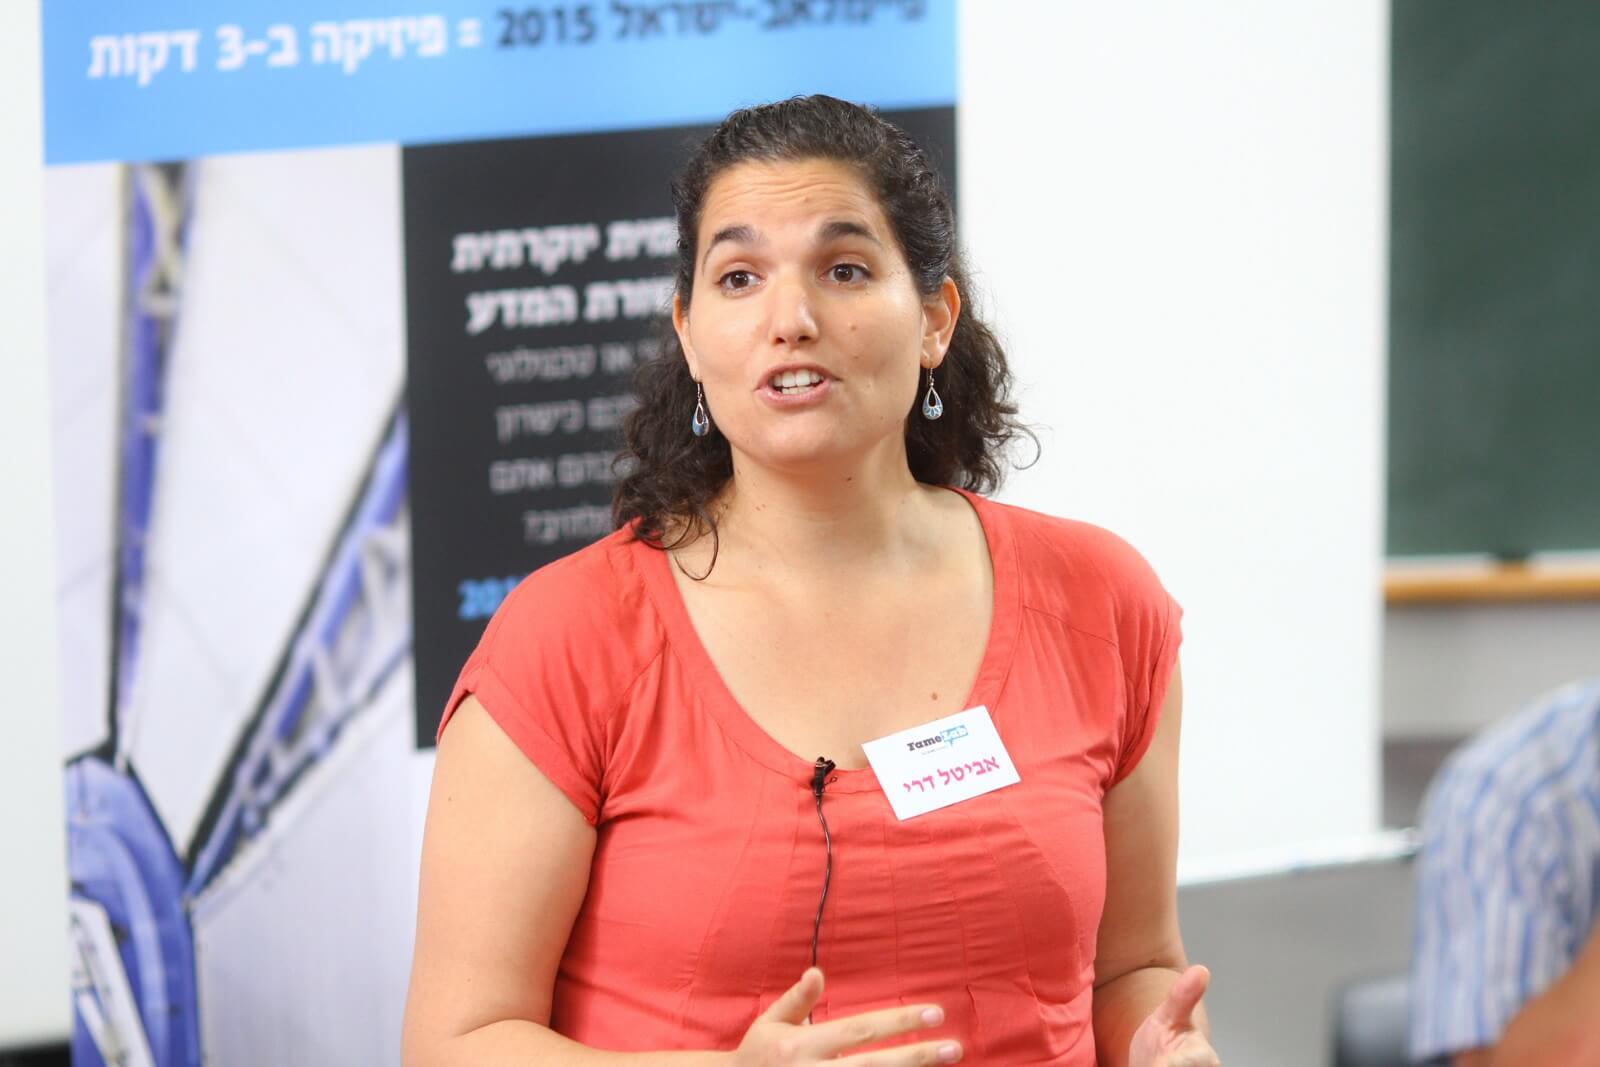 أفيتال داري، الفائزة بمسابقة FaymLab 2015 التي أقيمت في مركز حمادة في تل أبيب بتاريخ 7/5/15. الصورة: سيون بلاك